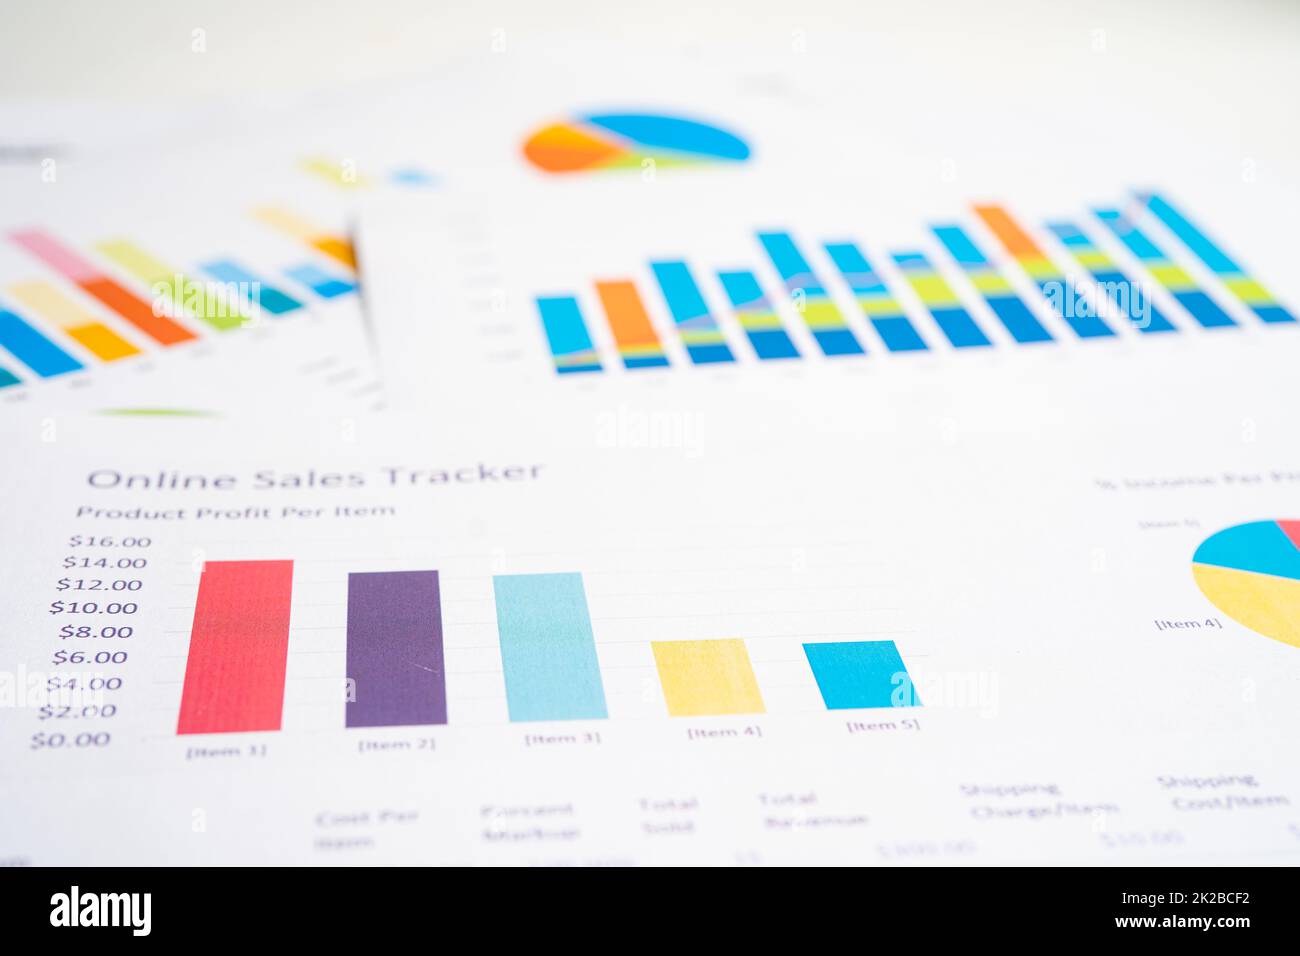 Diagramme stellt Papier grafisch dar. Finanzentwicklung, Bankkonto, Statistik, Investment Analytic Research Data Economy, Börse Geschäftsbüro Meeting-Konzept des Unternehmens. Stockfoto